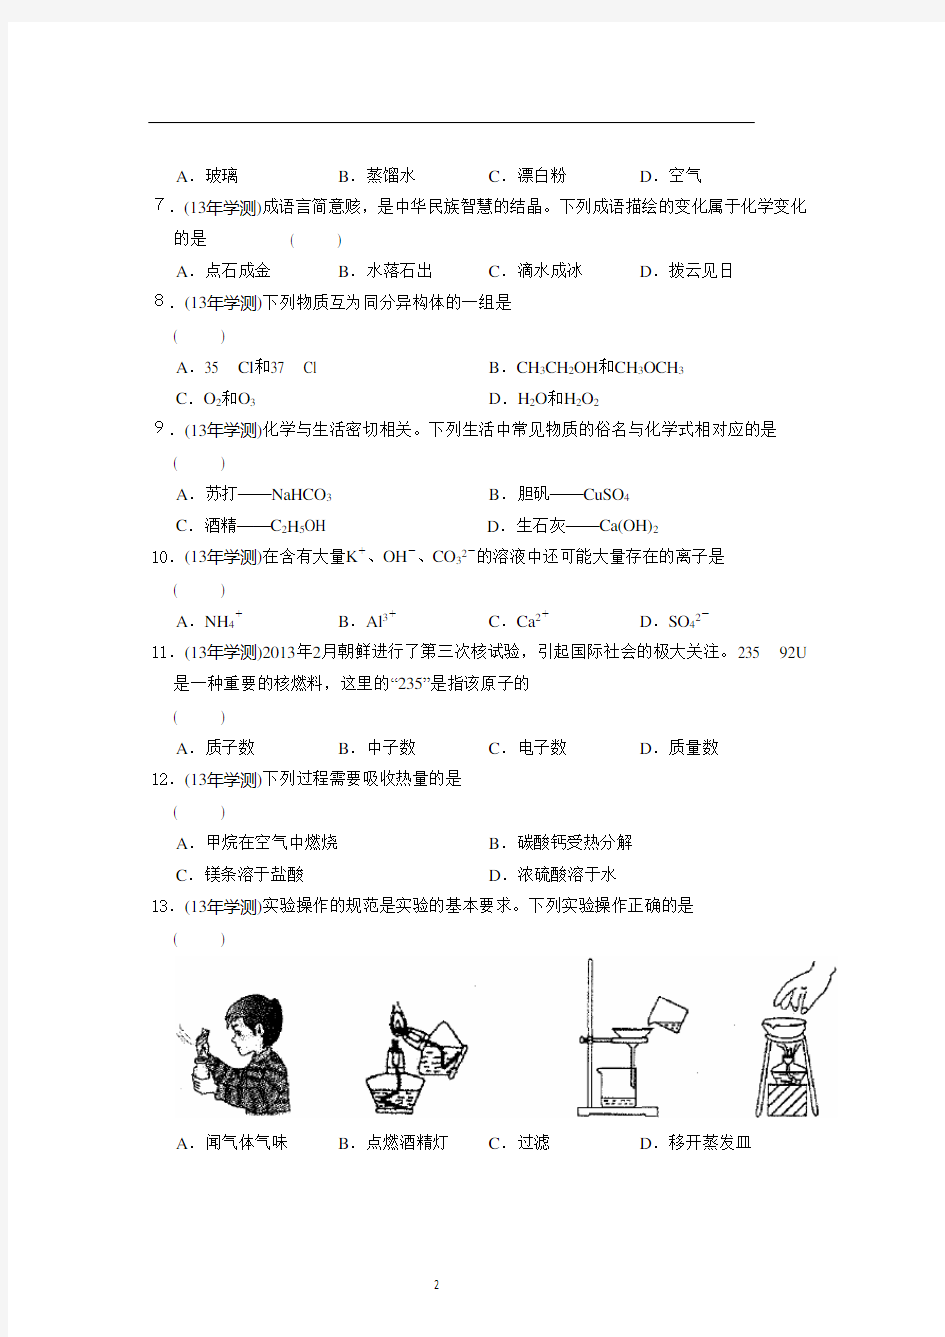 2013年江苏省普通高中学业水平测试(必修科目)化学试卷含答案